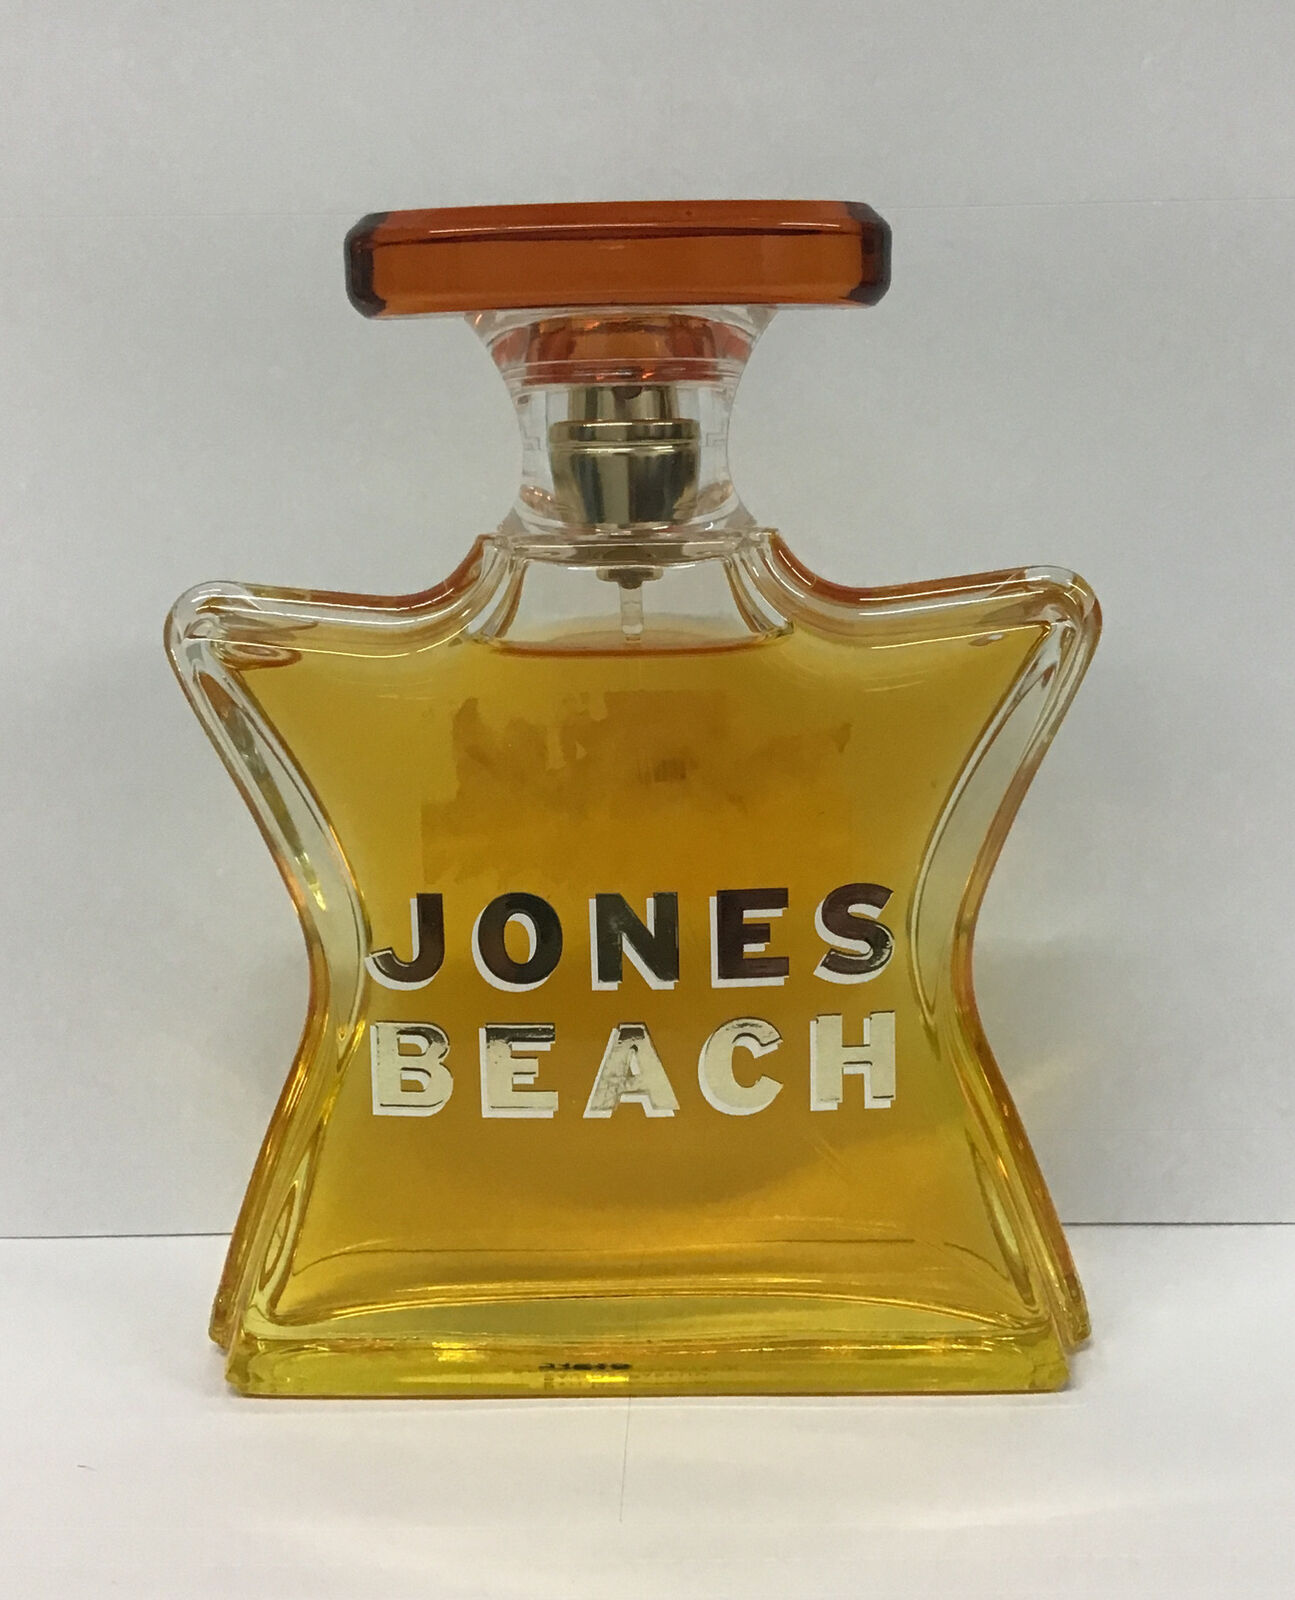 Bond No 9 Jones Beach Eau De Parfum Spray 3.3 Fl Oz, As Pictured.